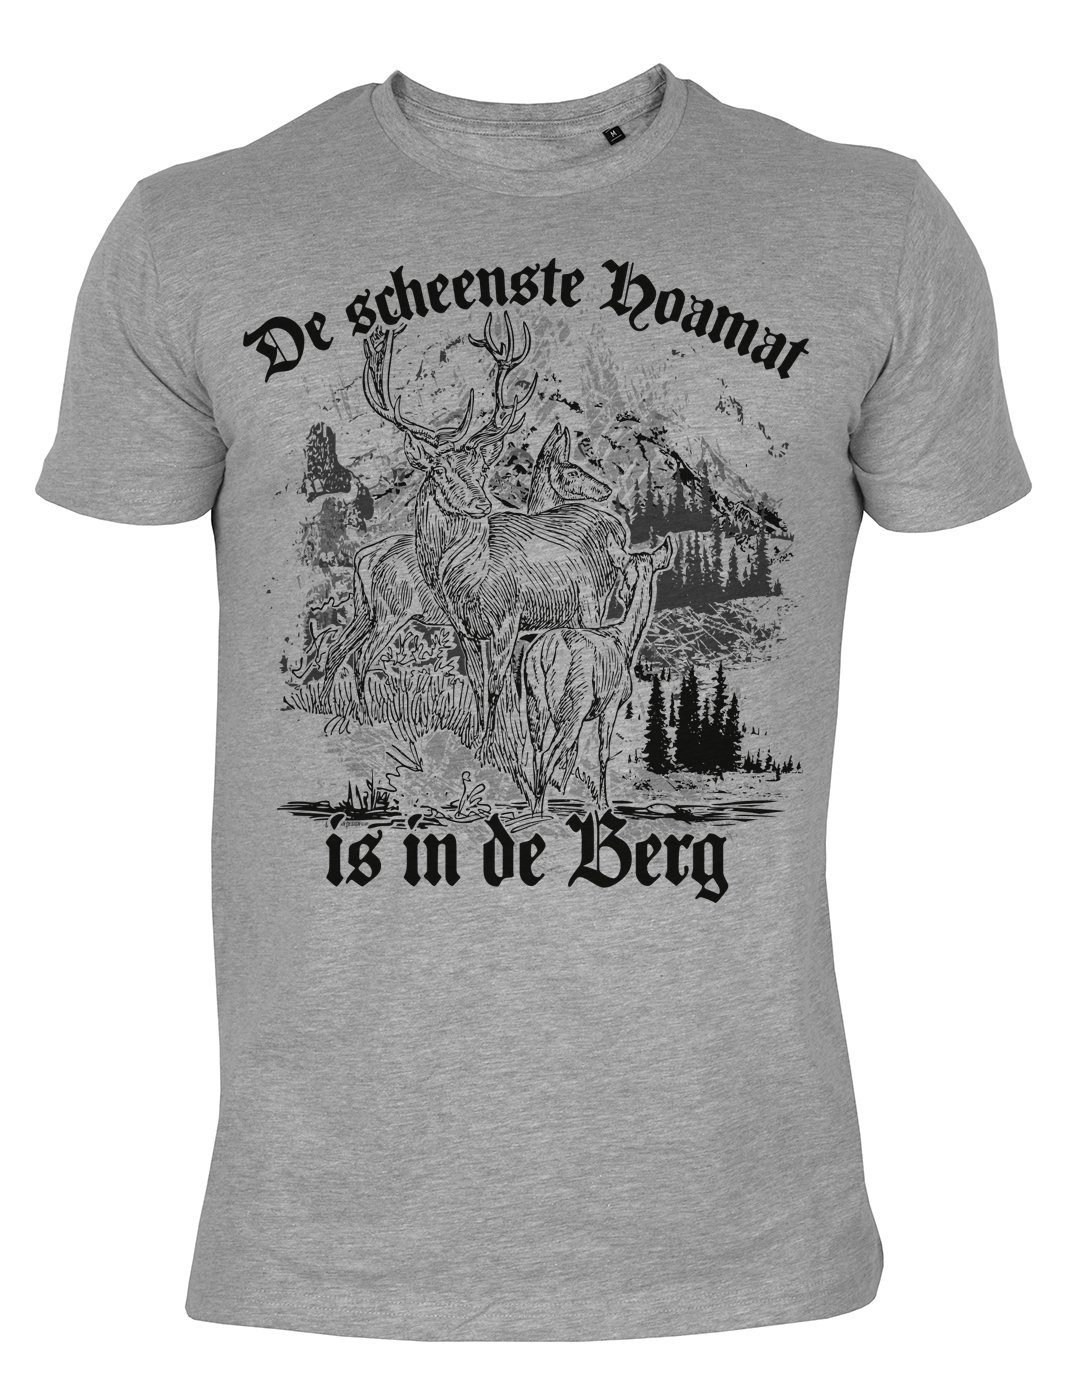 Tini - Shirts Print-Shirt Wanderer Bergsteiger Tshirt Wanderer Sprüche T-Shirt : De scheenste Hoamat is in de Berg -- Bayrische Sprüche, Mundart, Dialekt